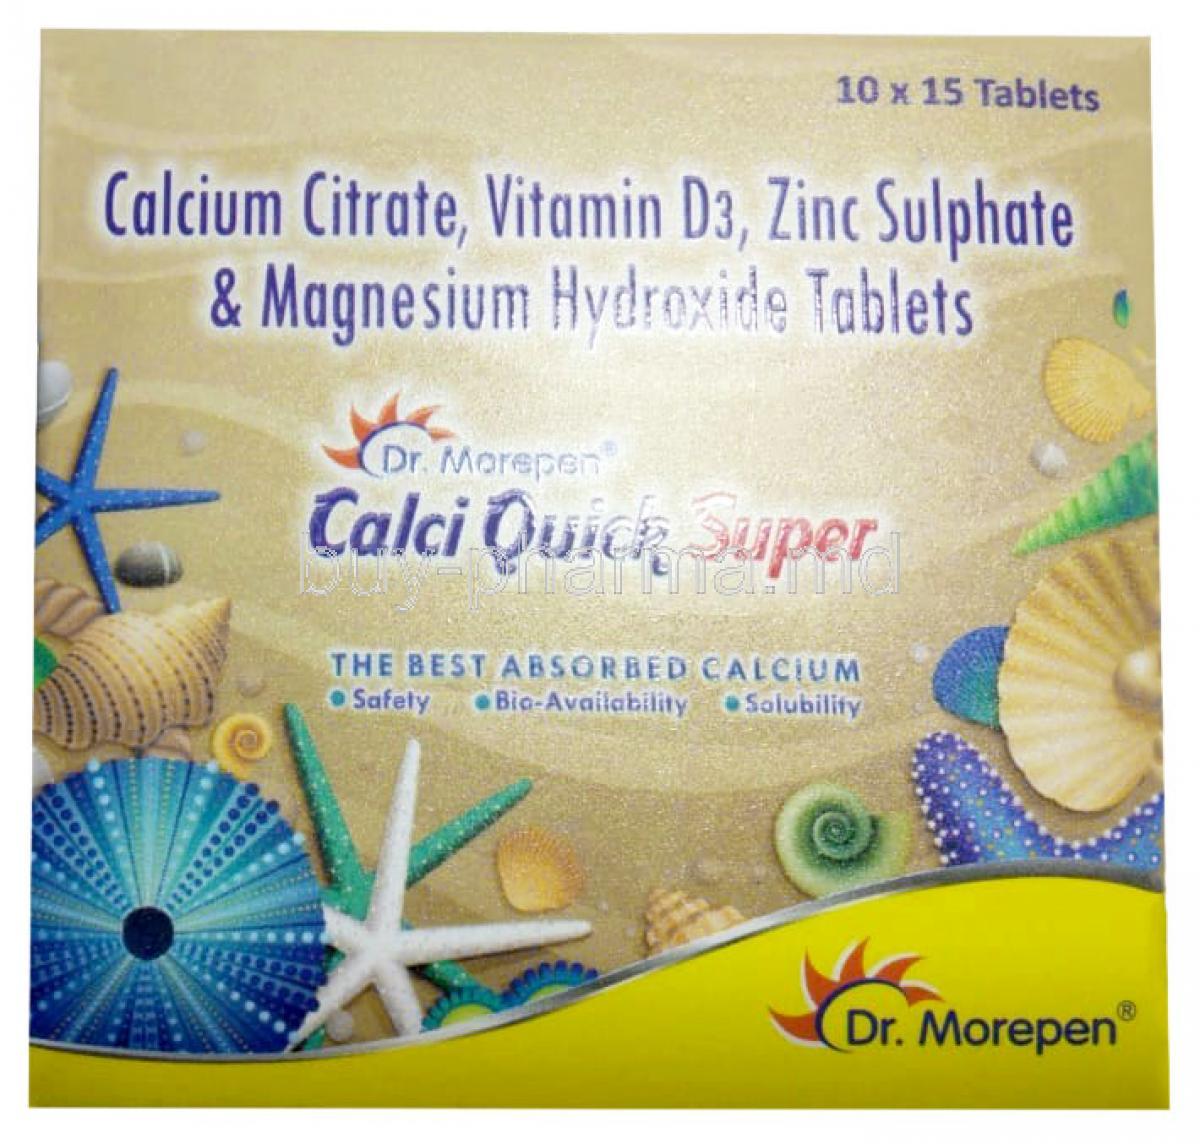 Calciquick Super, Calcium Citrate 1000 mg, Magnesium 100 mg, Zinc 4 mg, Vitamin D3 200 IU, Dr.Morepen Ltd, Box front view